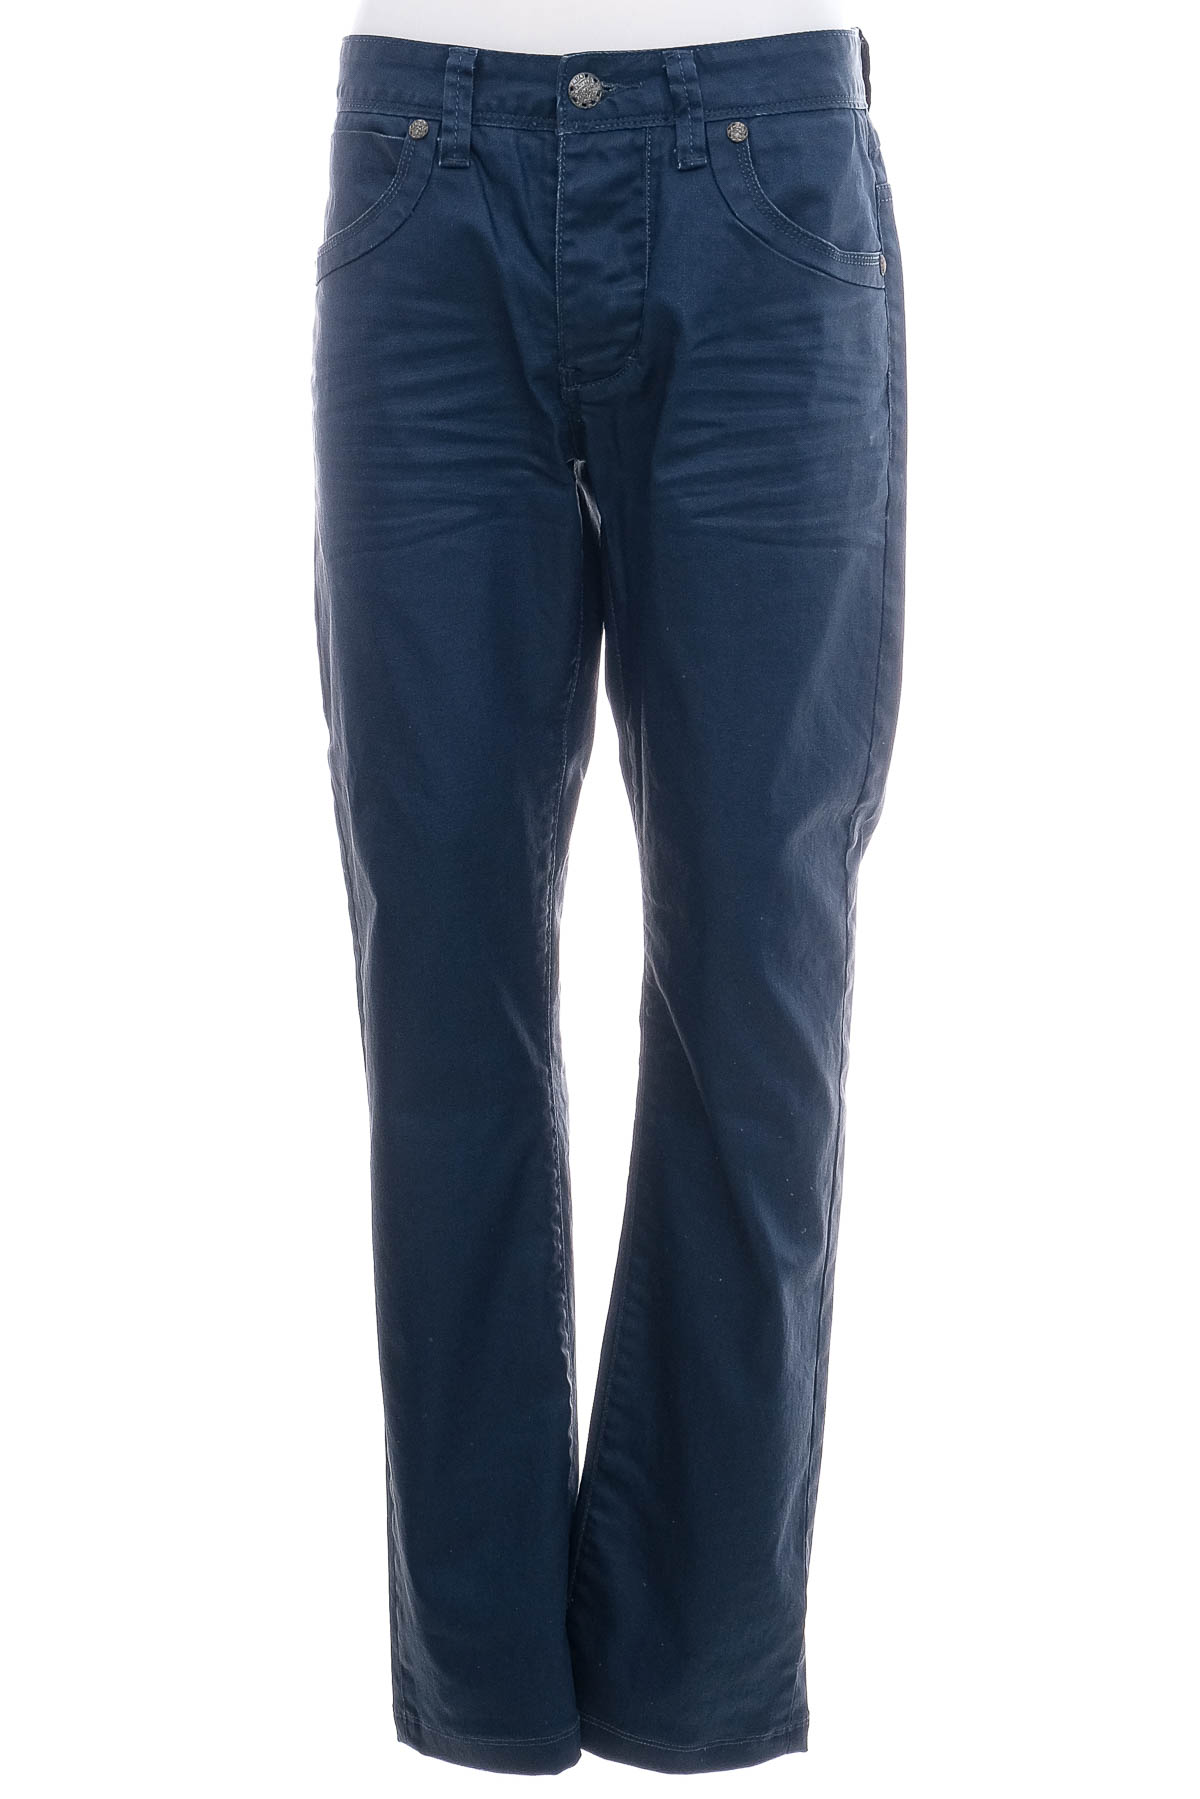 Men's jeans - Leo Gutti - 0